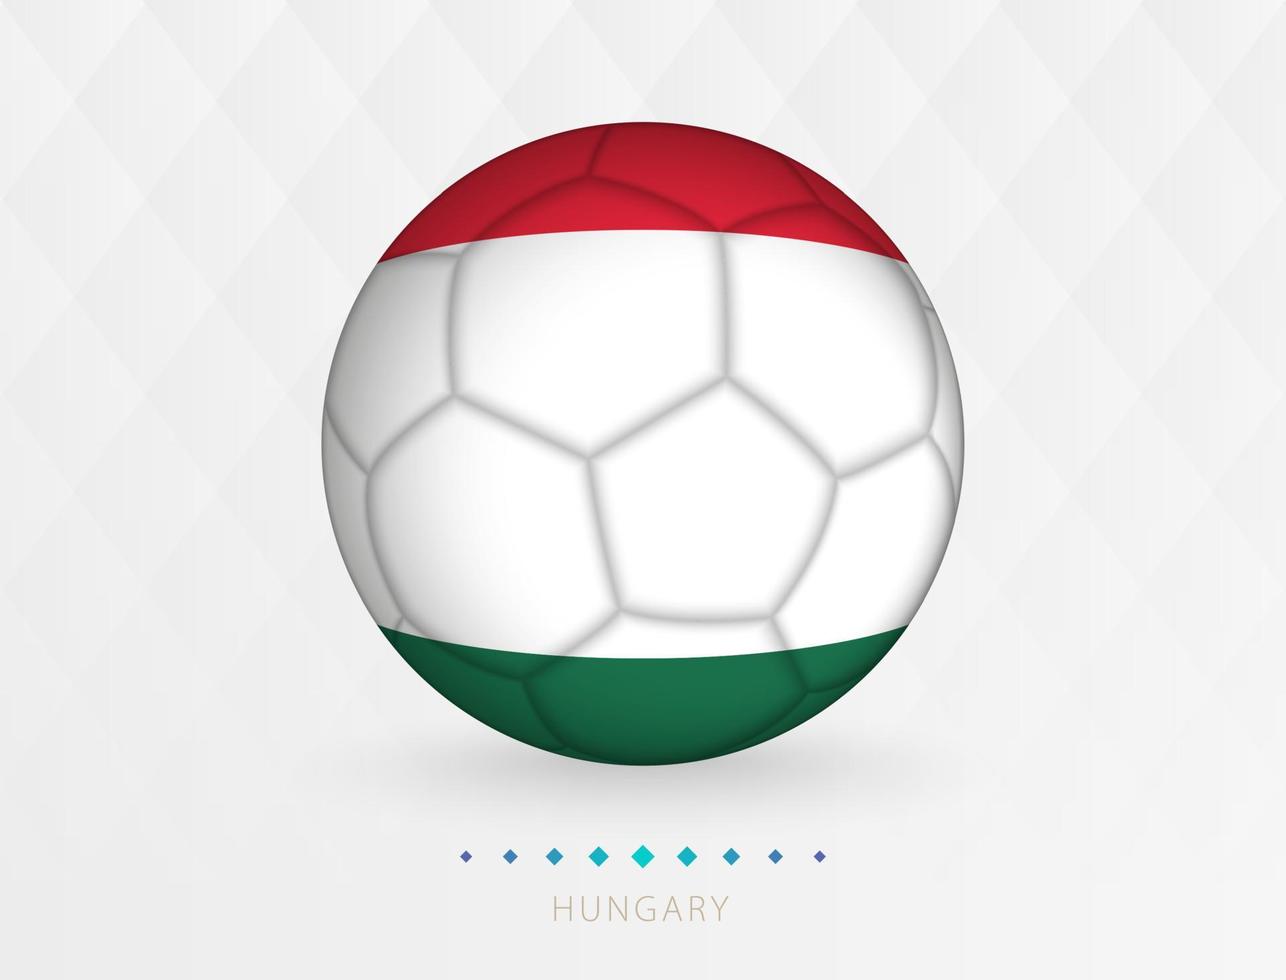 Amerikaans voetbal bal met Hongarije vlag patroon, voetbal bal met vlag van Hongarije nationaal team. vector